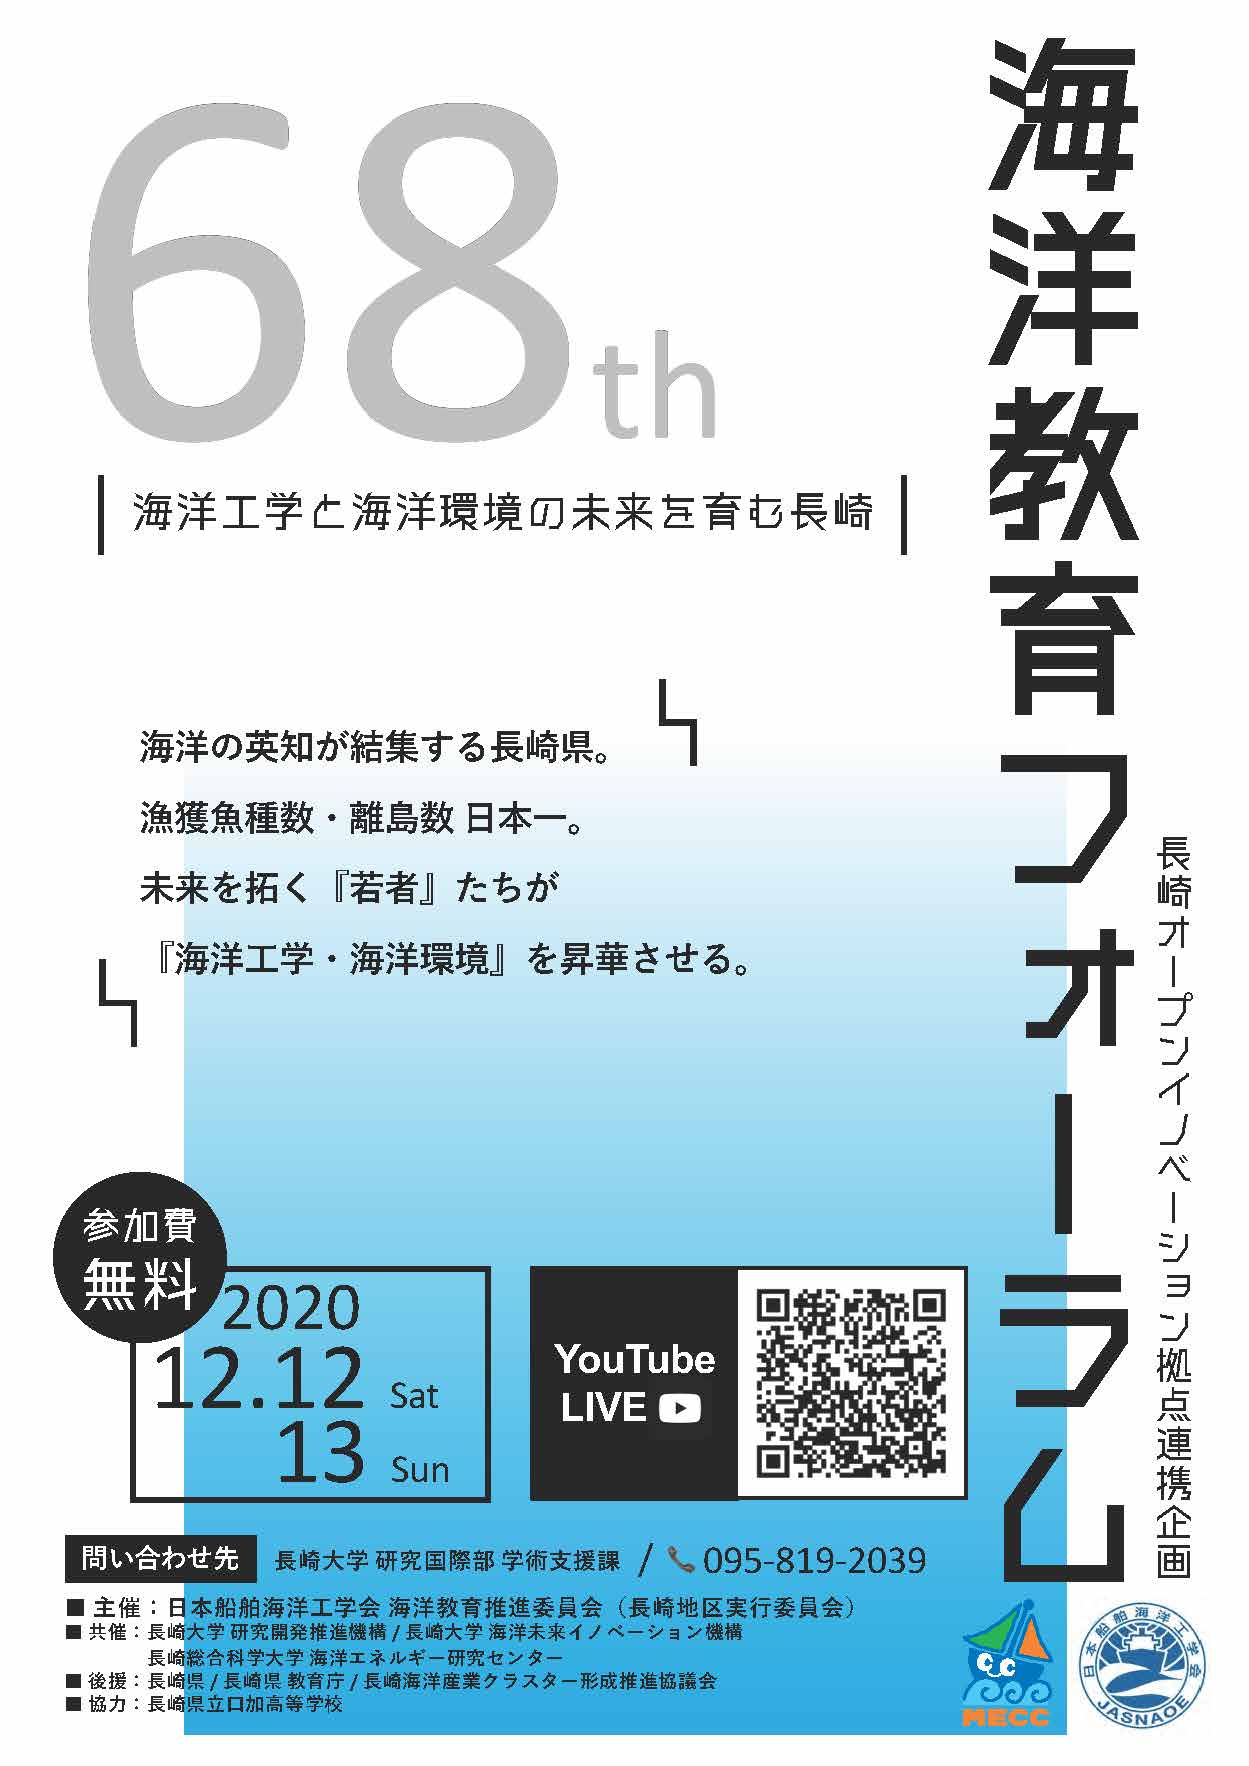 Event第68回海洋教育フォーラム「海洋工学と海洋環境の未来を育む長崎」